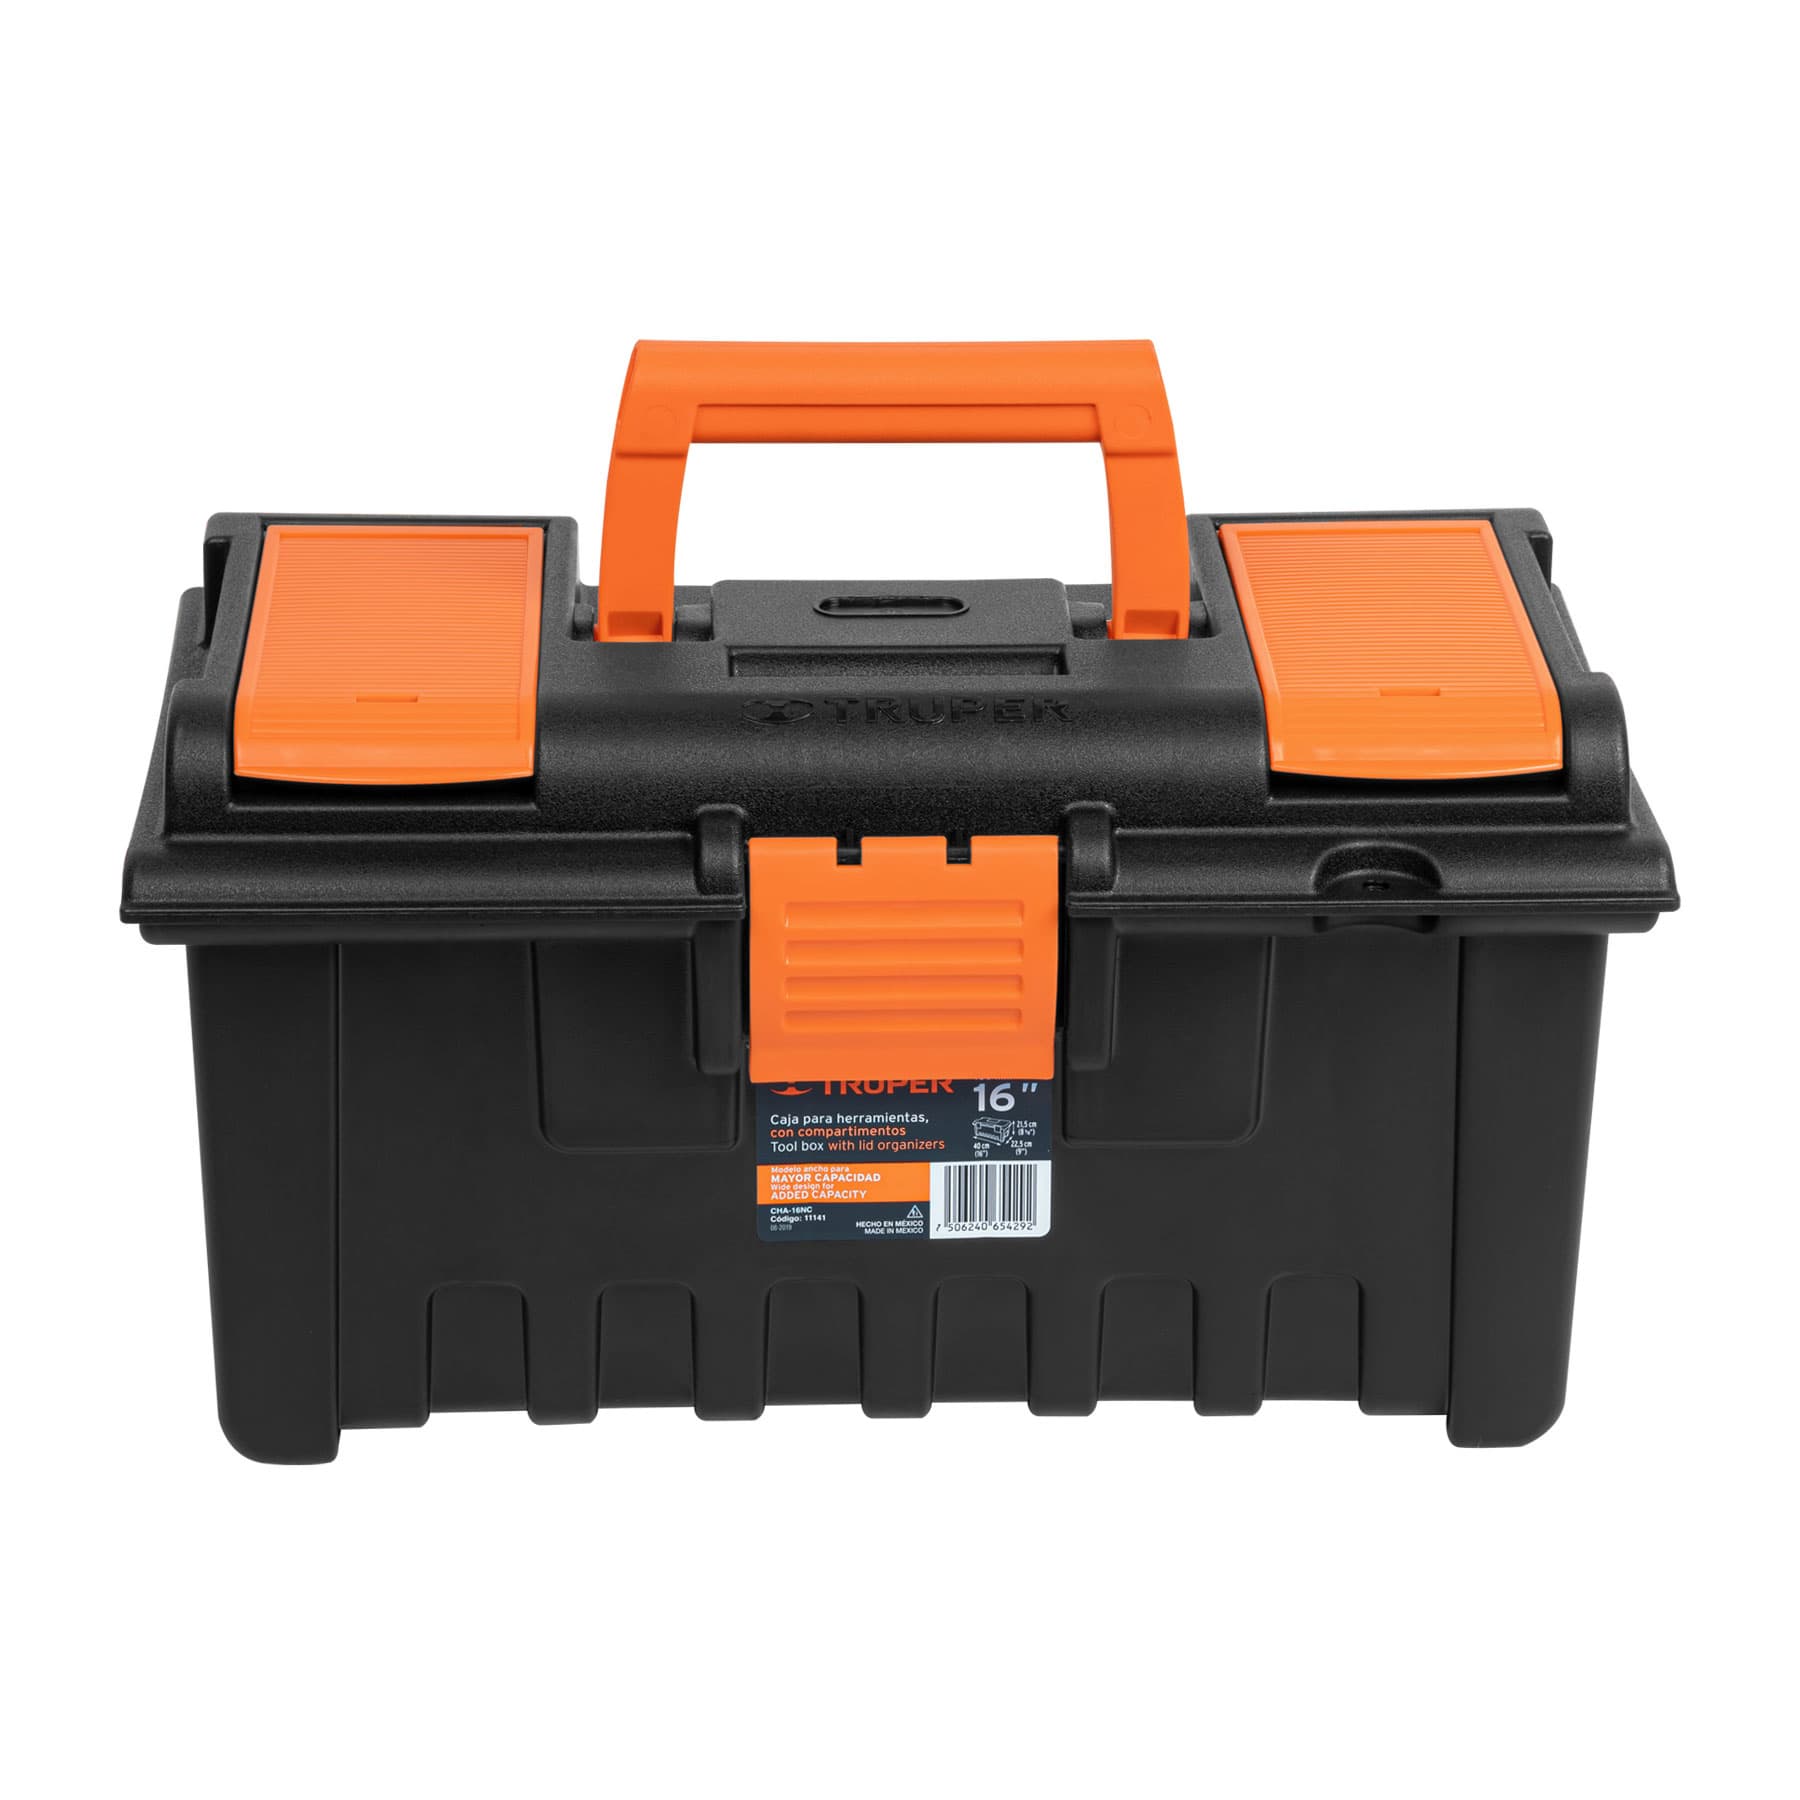 Caja para guardar herramientas, MXGML-002-7, 1 Gaveta, 17 Base, 6.25  Altura, 6.25 Ancho, Lámina